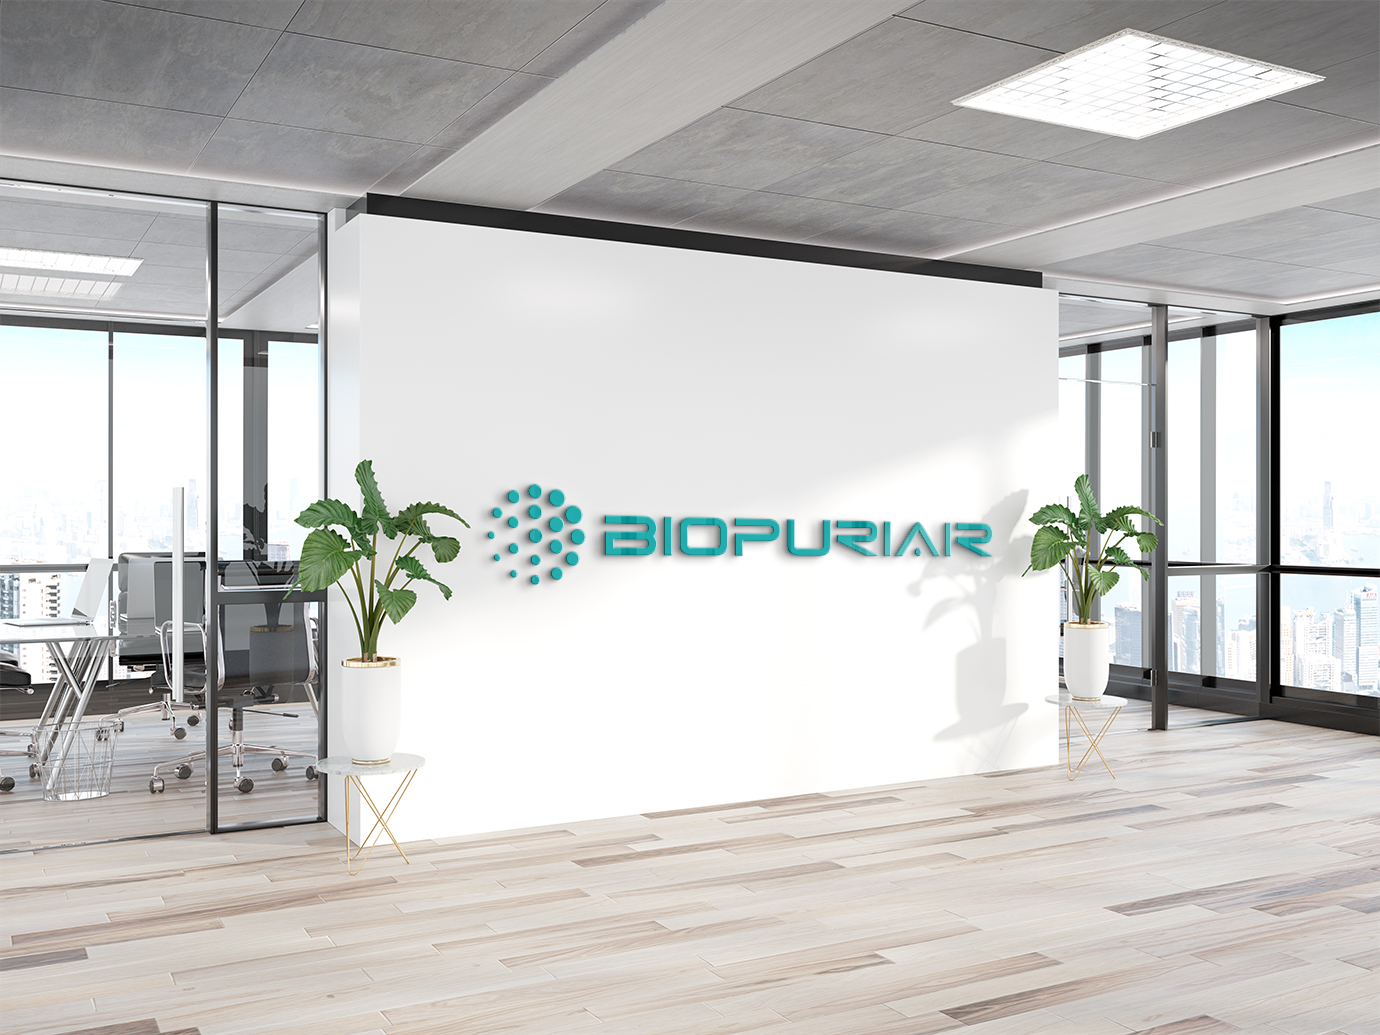 공기청정기 BiopuriAir-(주)엔코아네트웍스